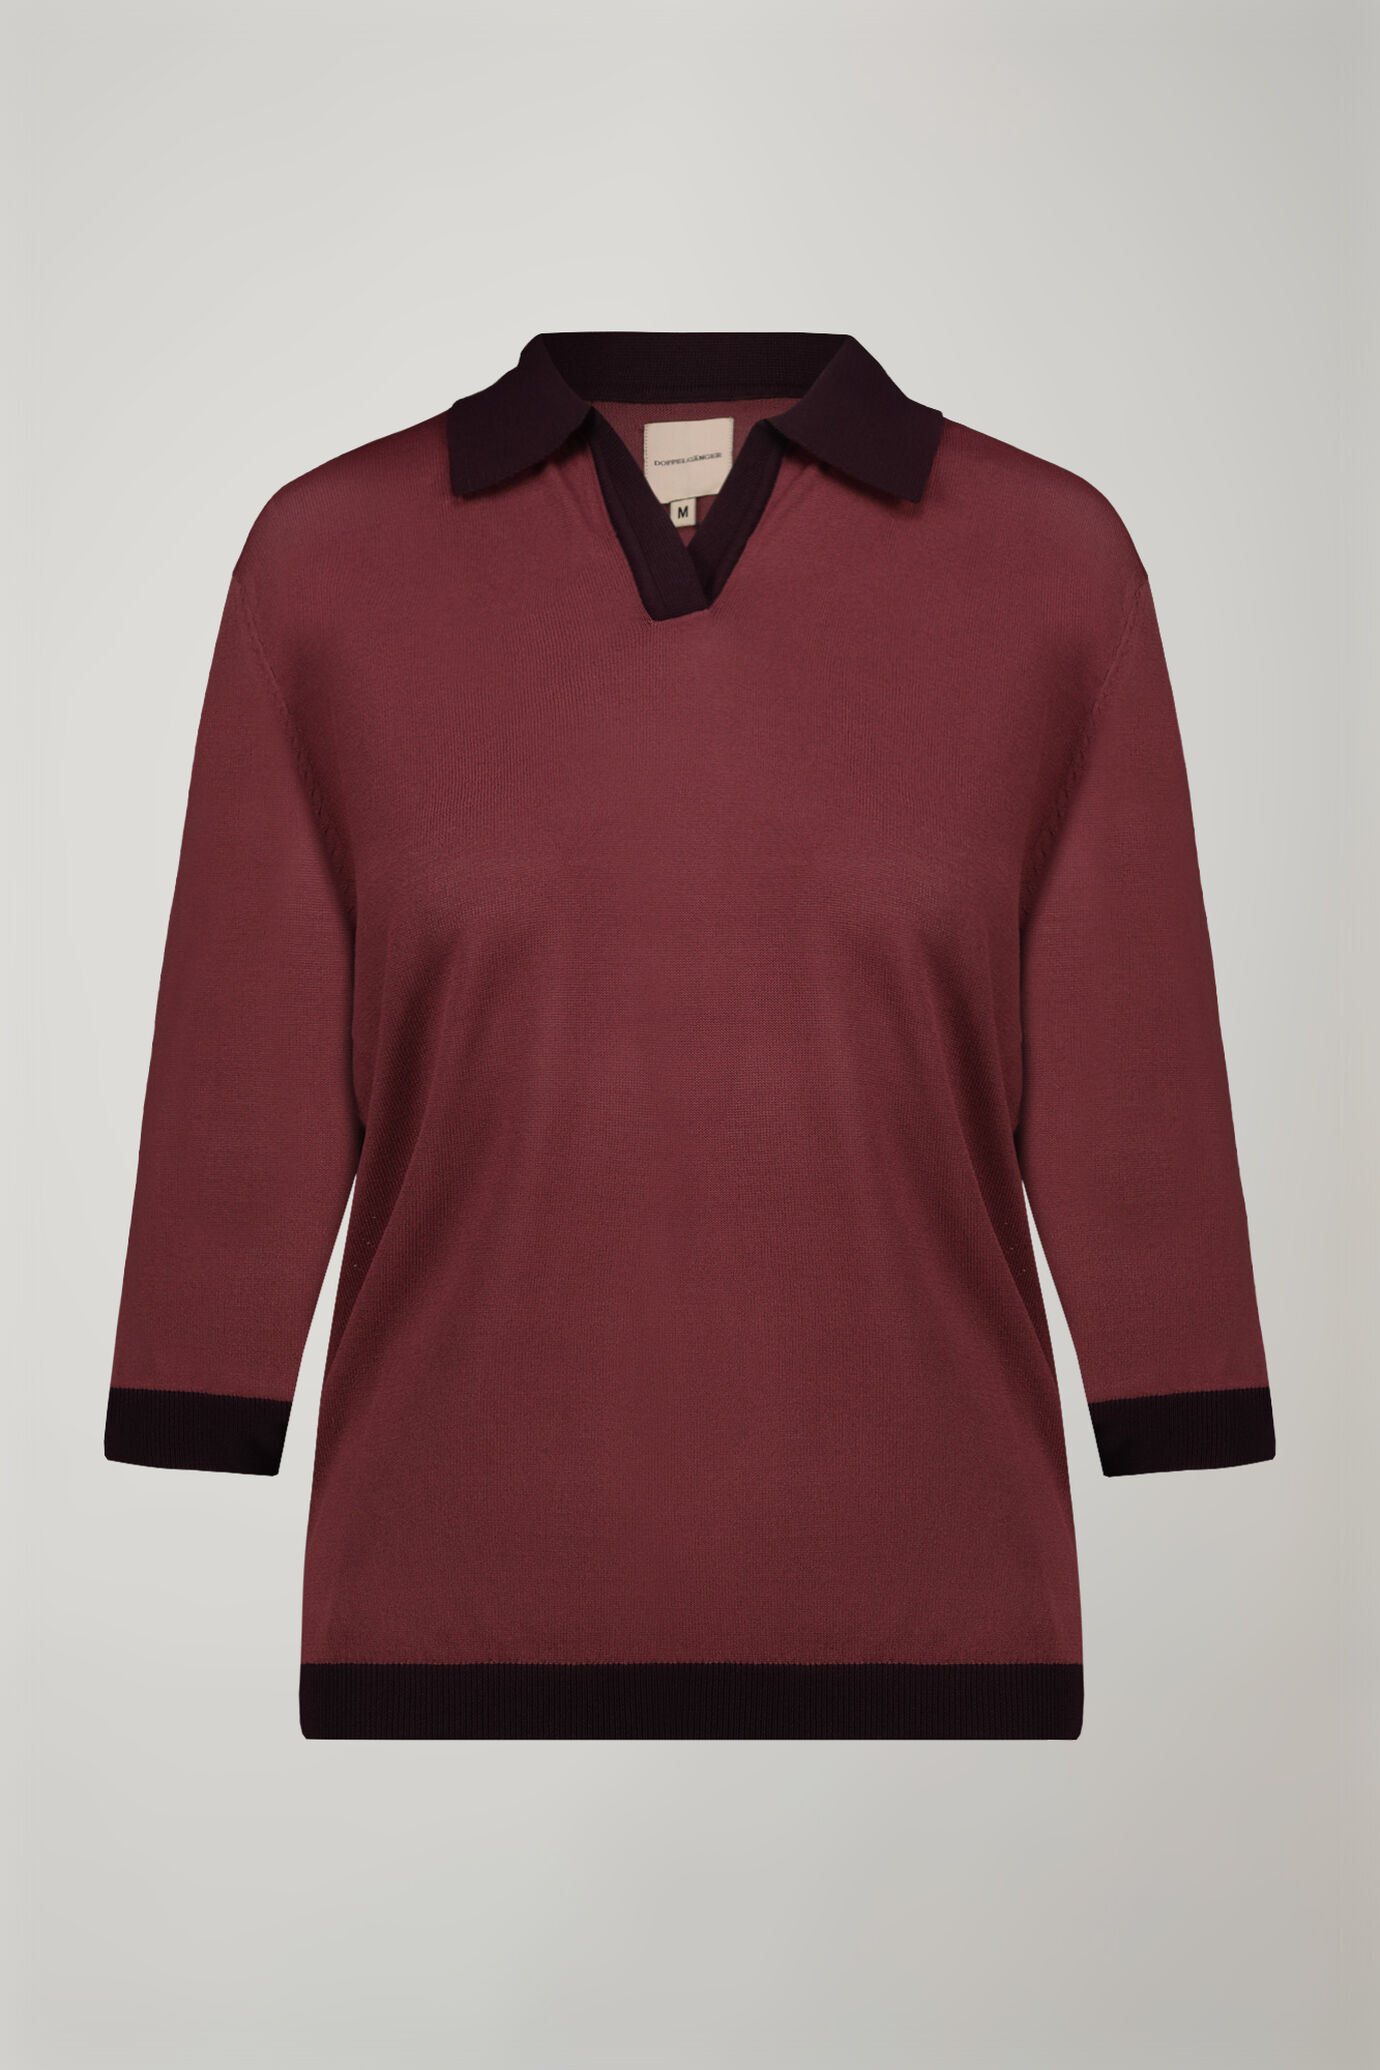 Damen-Poloshirt mit 3/4-Ärmeln in normaler Passform image number 4